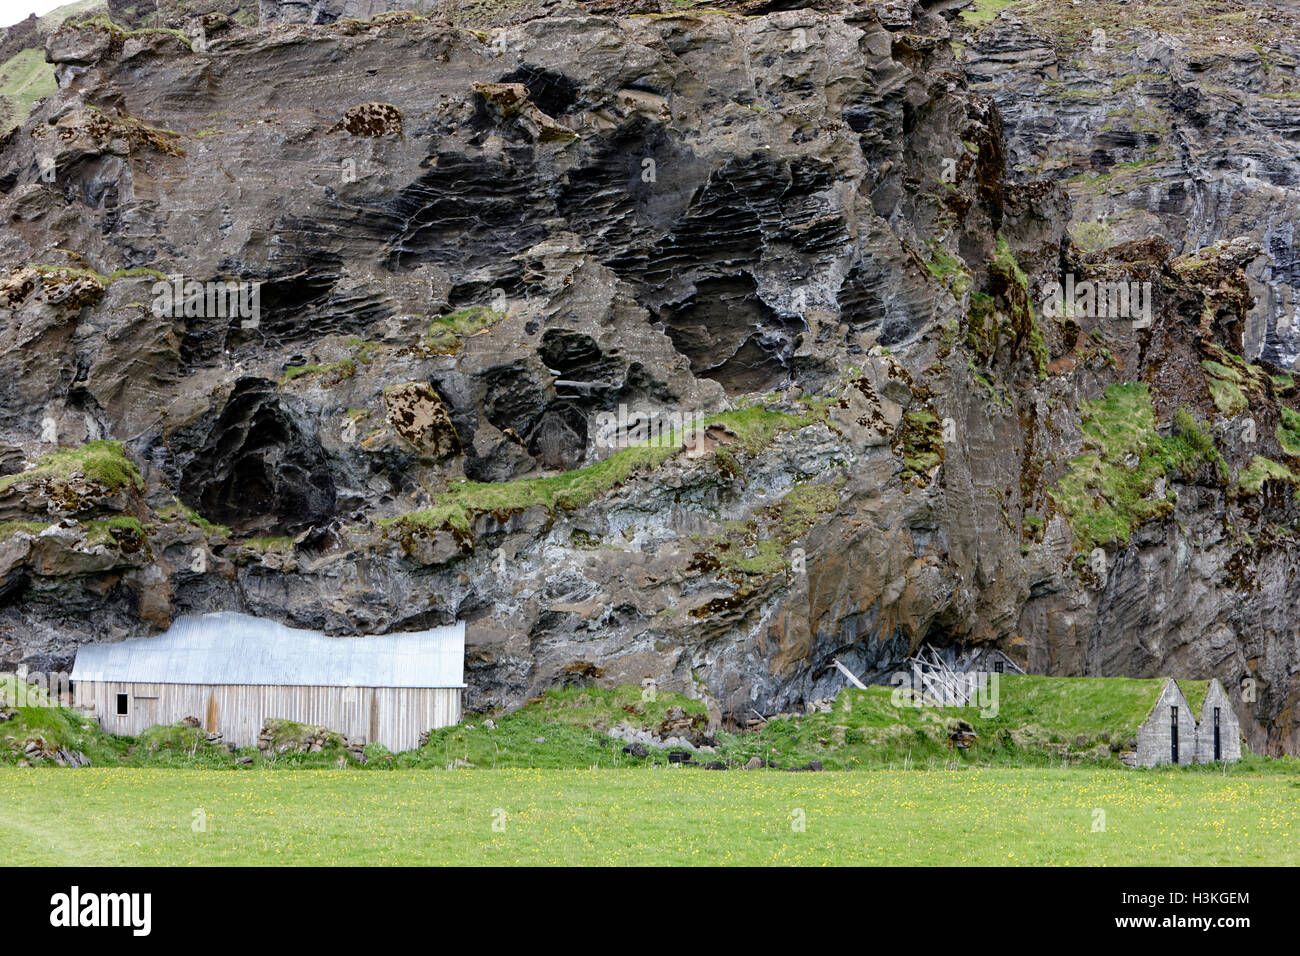 verlassene überdachte isländischen Rasen Häuser nun als Wertaufbewahrungsmittel Bereich verwendet und Scheune in Fels gebaut Island Gesicht Stockfoto